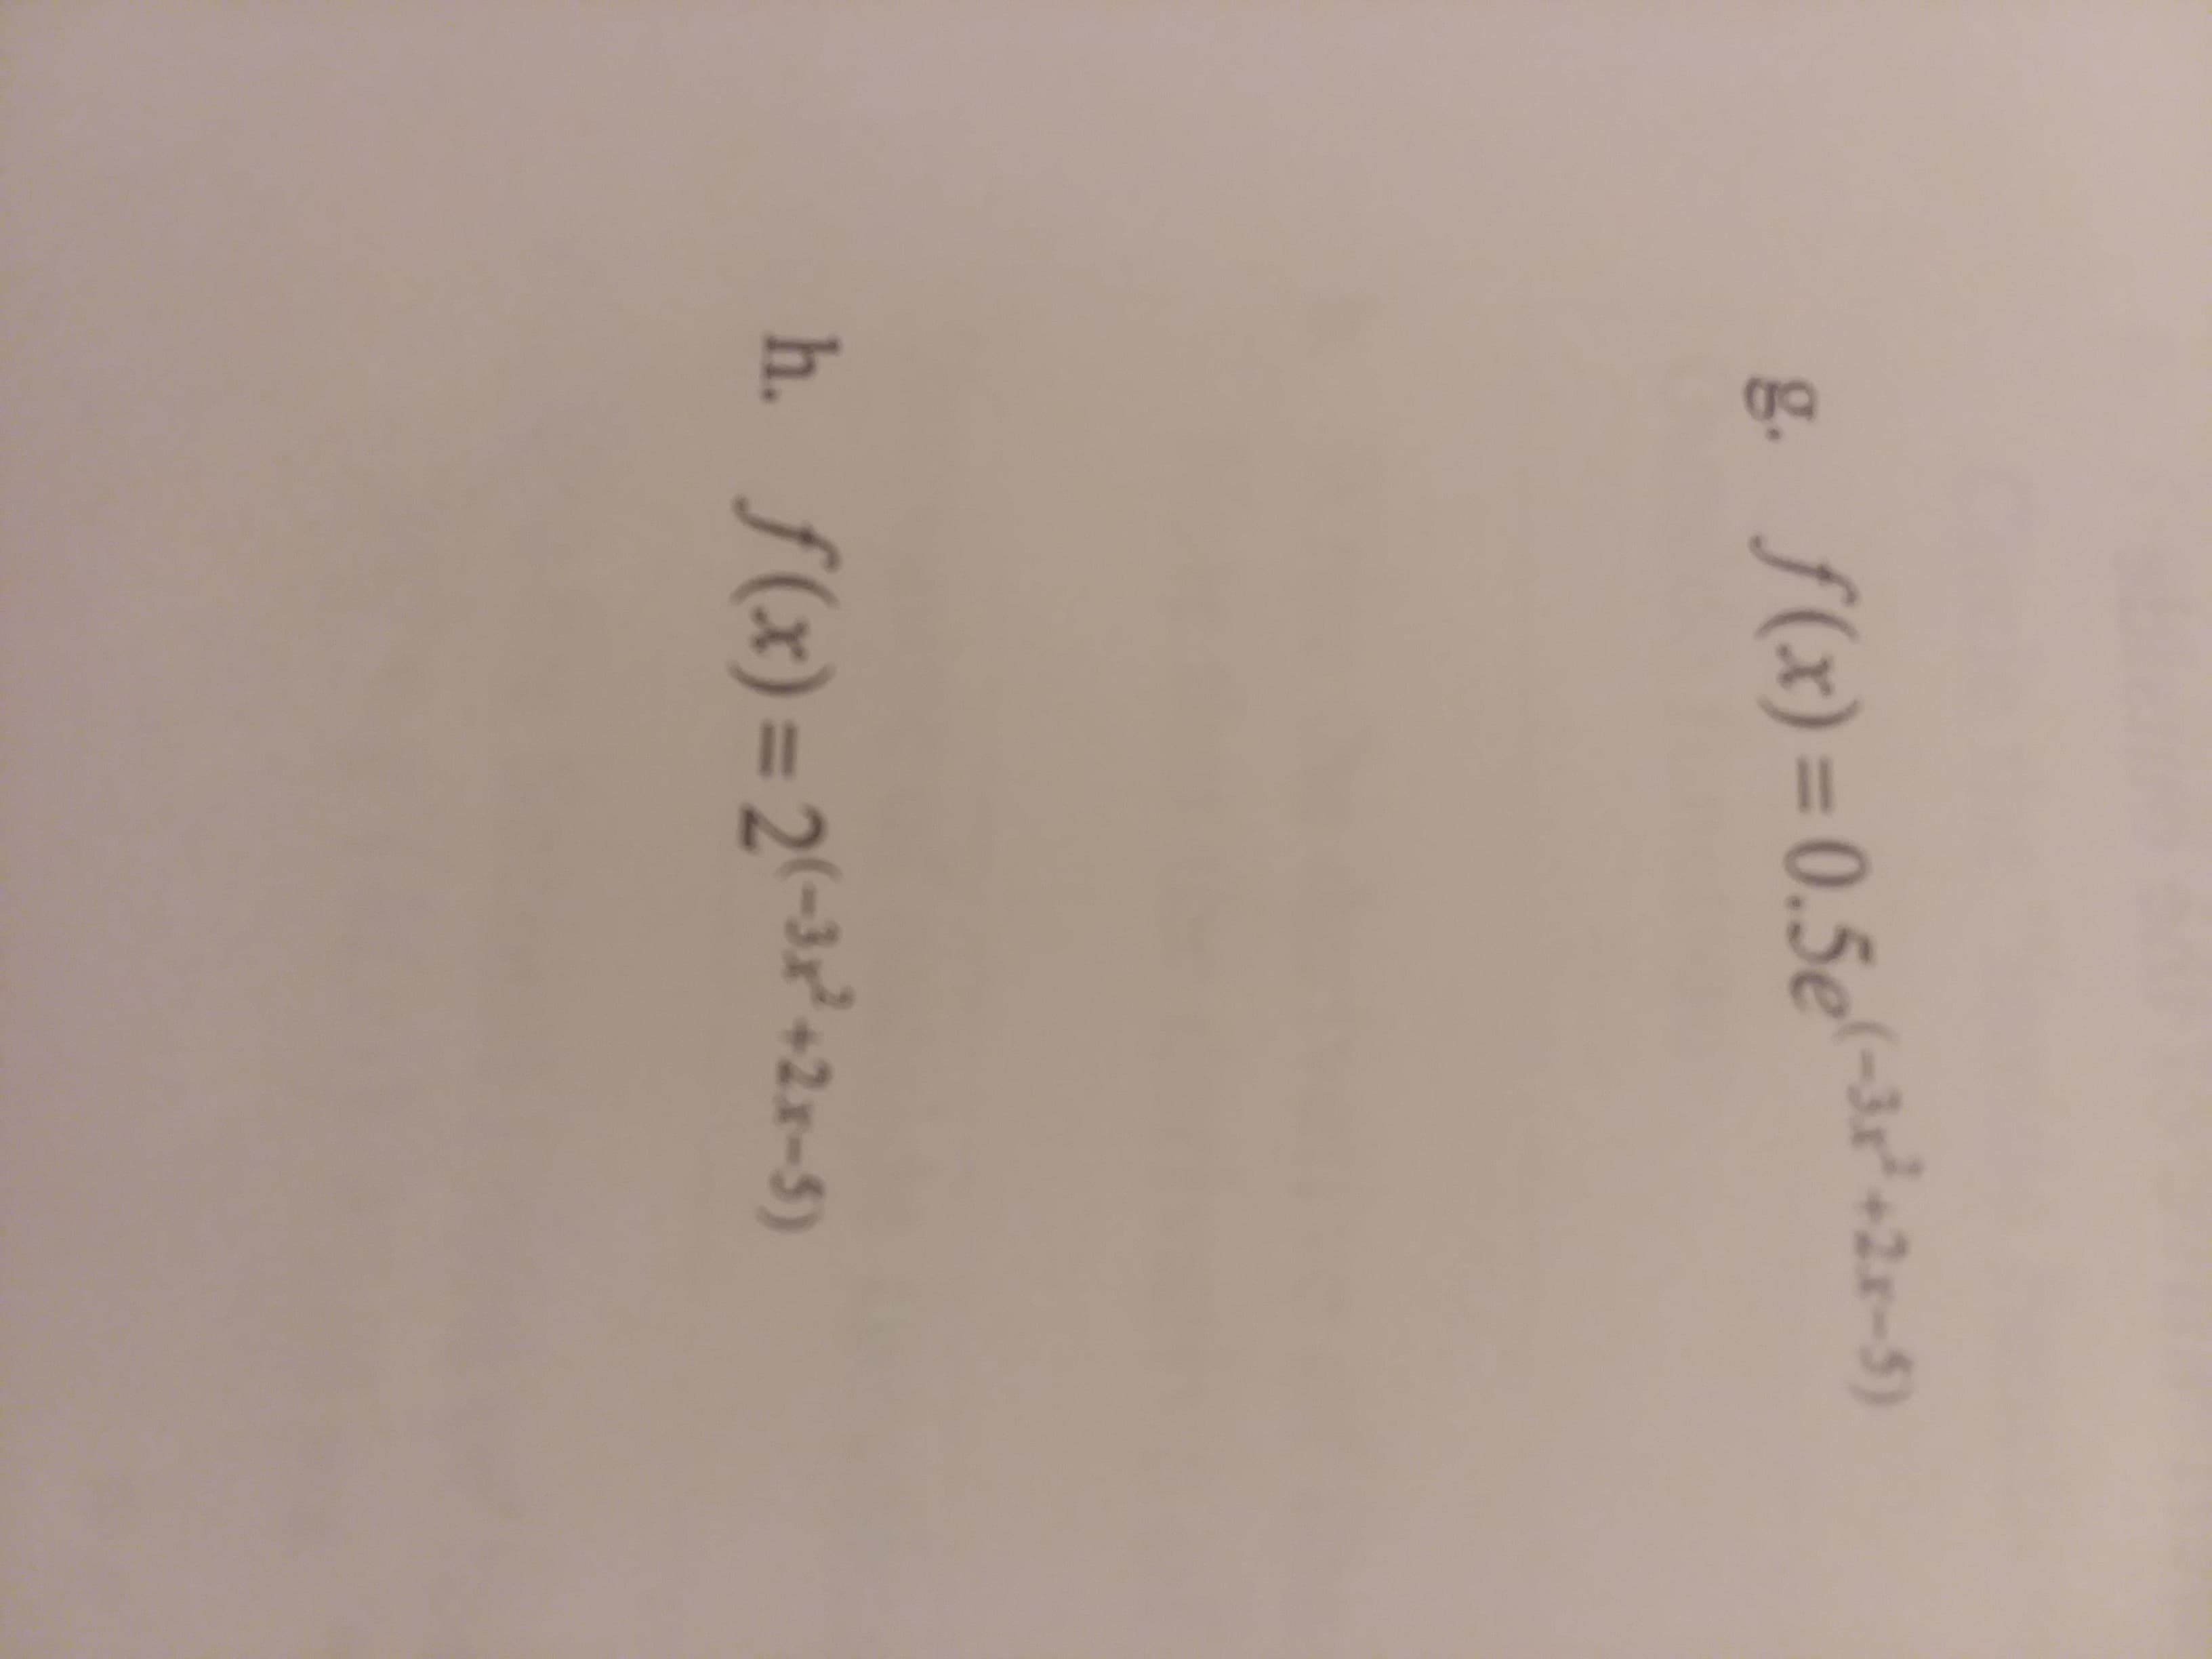 f (x) = 0.5e
-32" +2x-5)
-3+2x-5)
g.
h. f -3-2x-5)
(x) = 2
